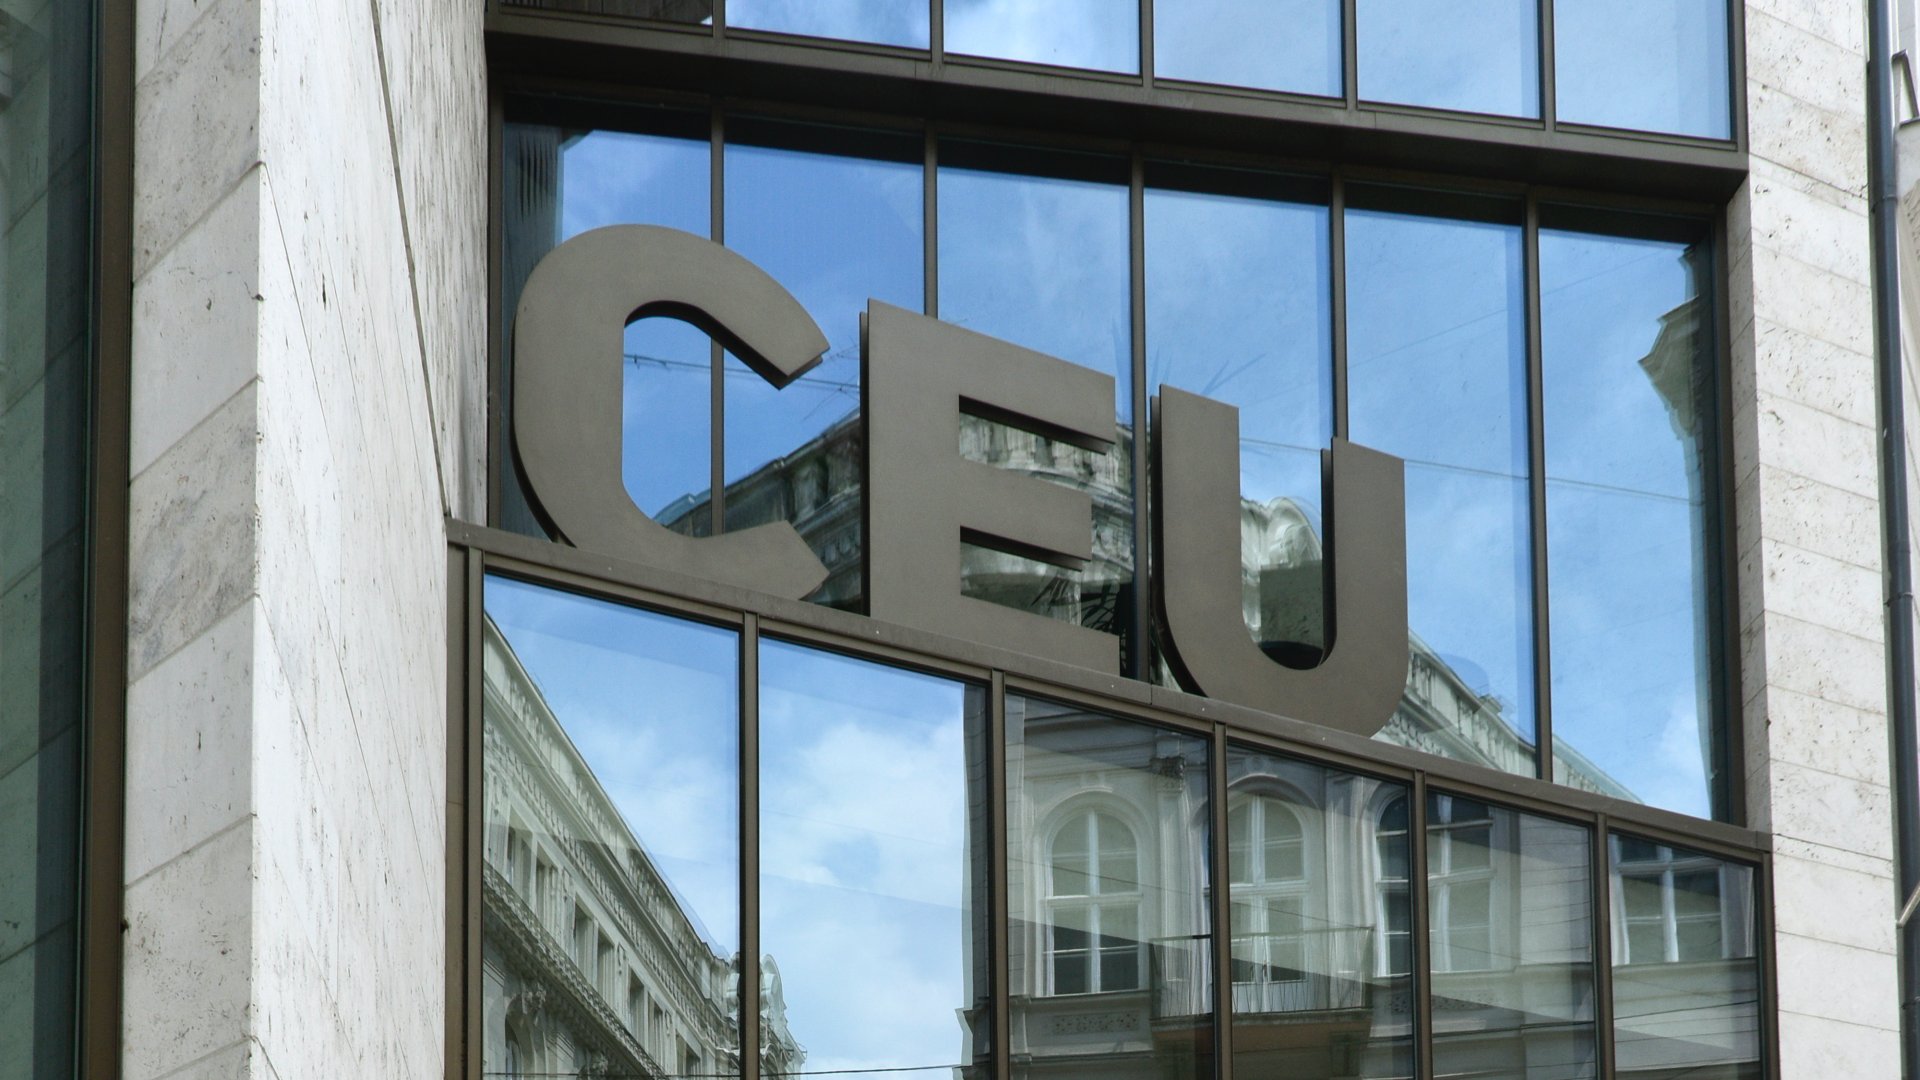 A volt Középeurópai Egyetem (CEU - Central European University) egykori belvárosi kampusz épületének bejárata a fõváros V. kerületében Nádor utca 15. szám alatt